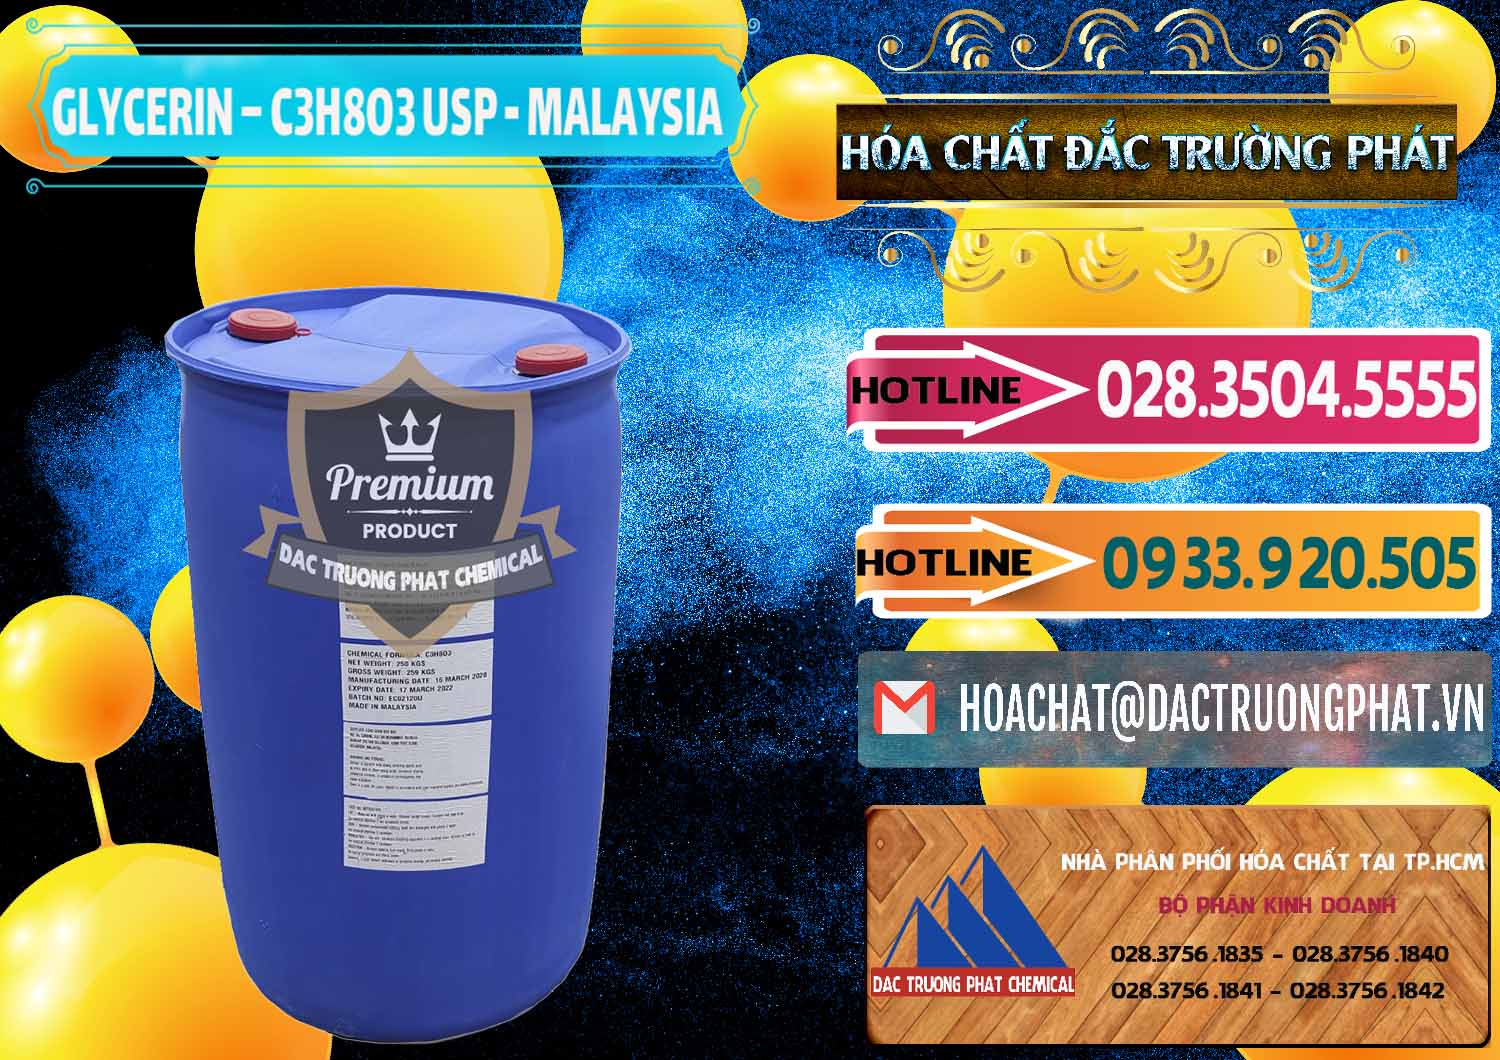 Nhà nhập khẩu & bán Glycerin – C3H8O3 USP Malaysia - 0233 - Chuyên phân phối _ bán hóa chất tại TP.HCM - dactruongphat.vn